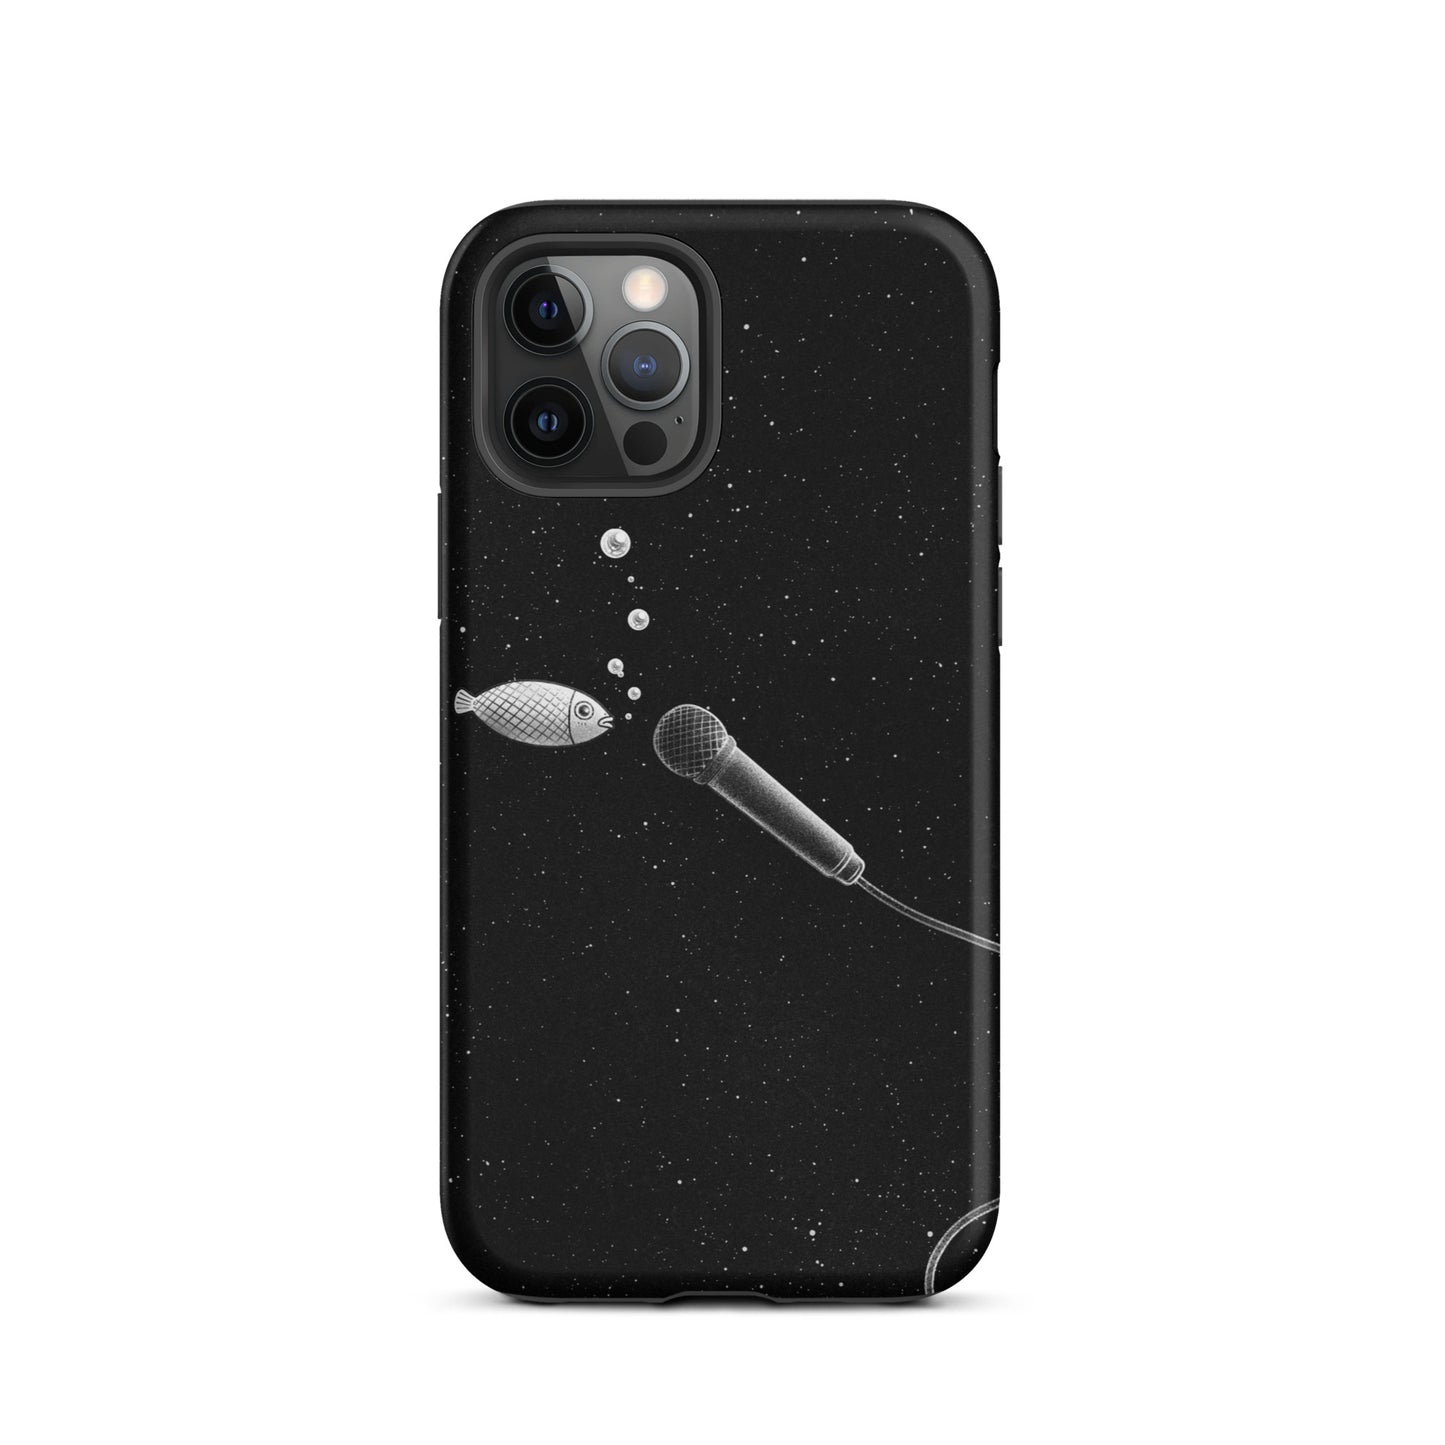 Fish iPhone case